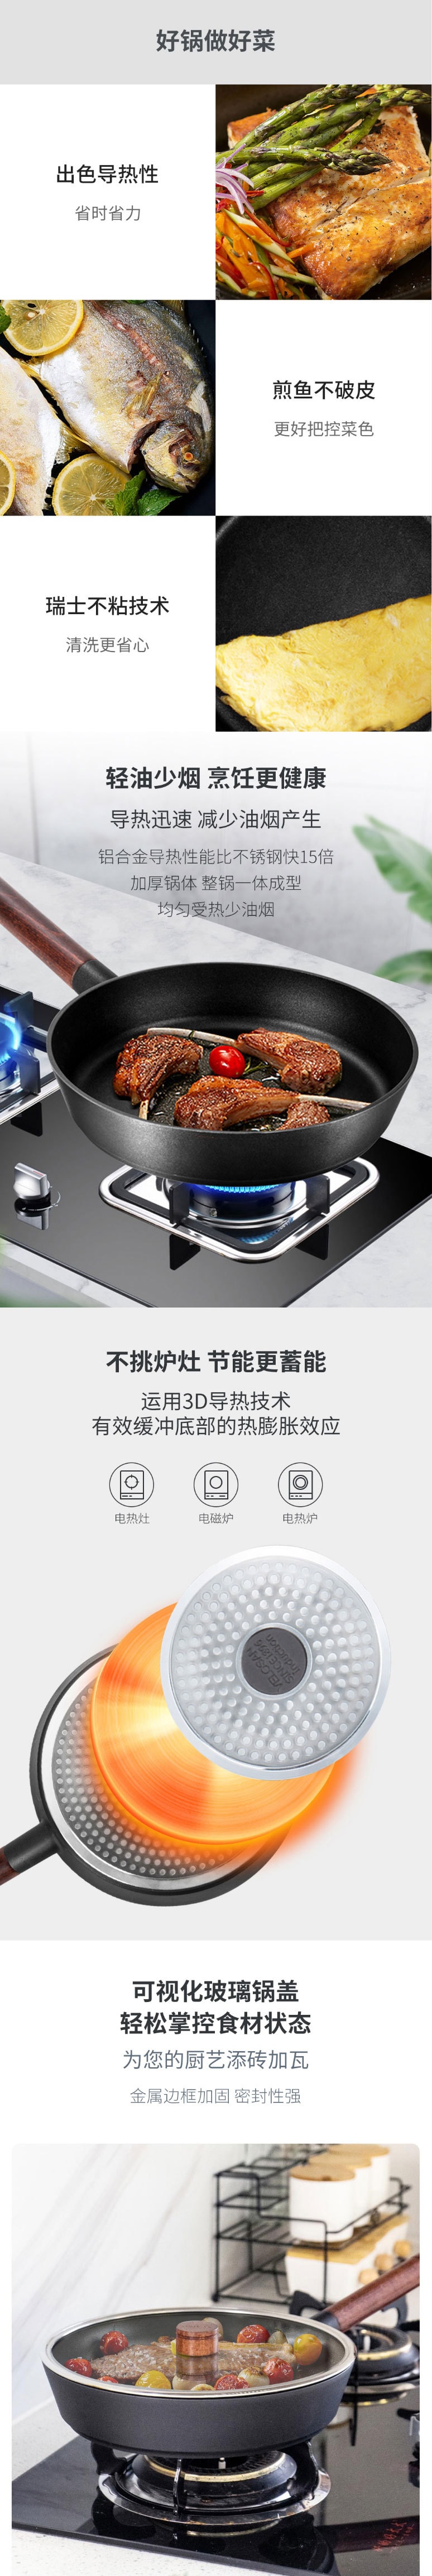 【中國直郵】小米有品 VELOSAN 不沾煎鍋 少油煙 28cm(含鍋蓋) 黑色